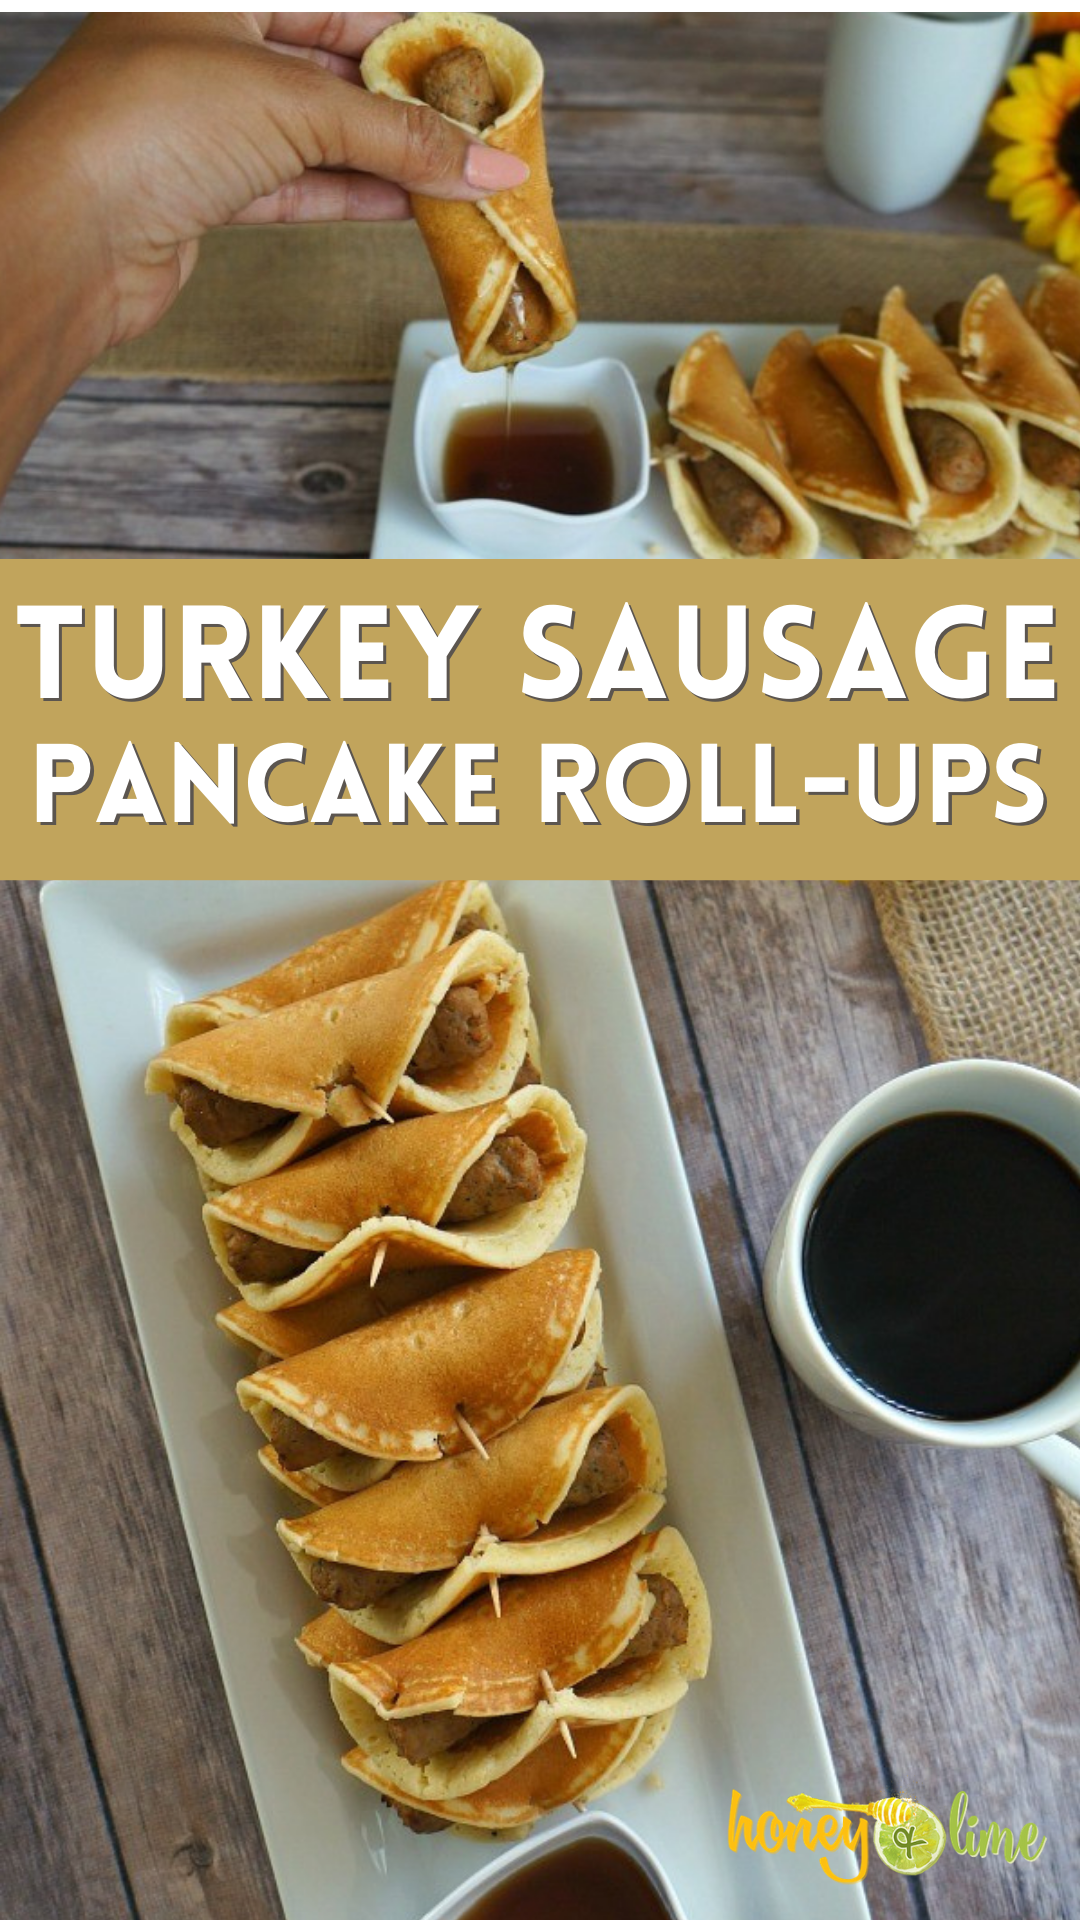 https://www.honeyandlime.co/brunch-turkey-sausage-pancake-roll-ups/turkey-sausage-pancake-roll-ups-an-easy-brunch-recipe-idea/